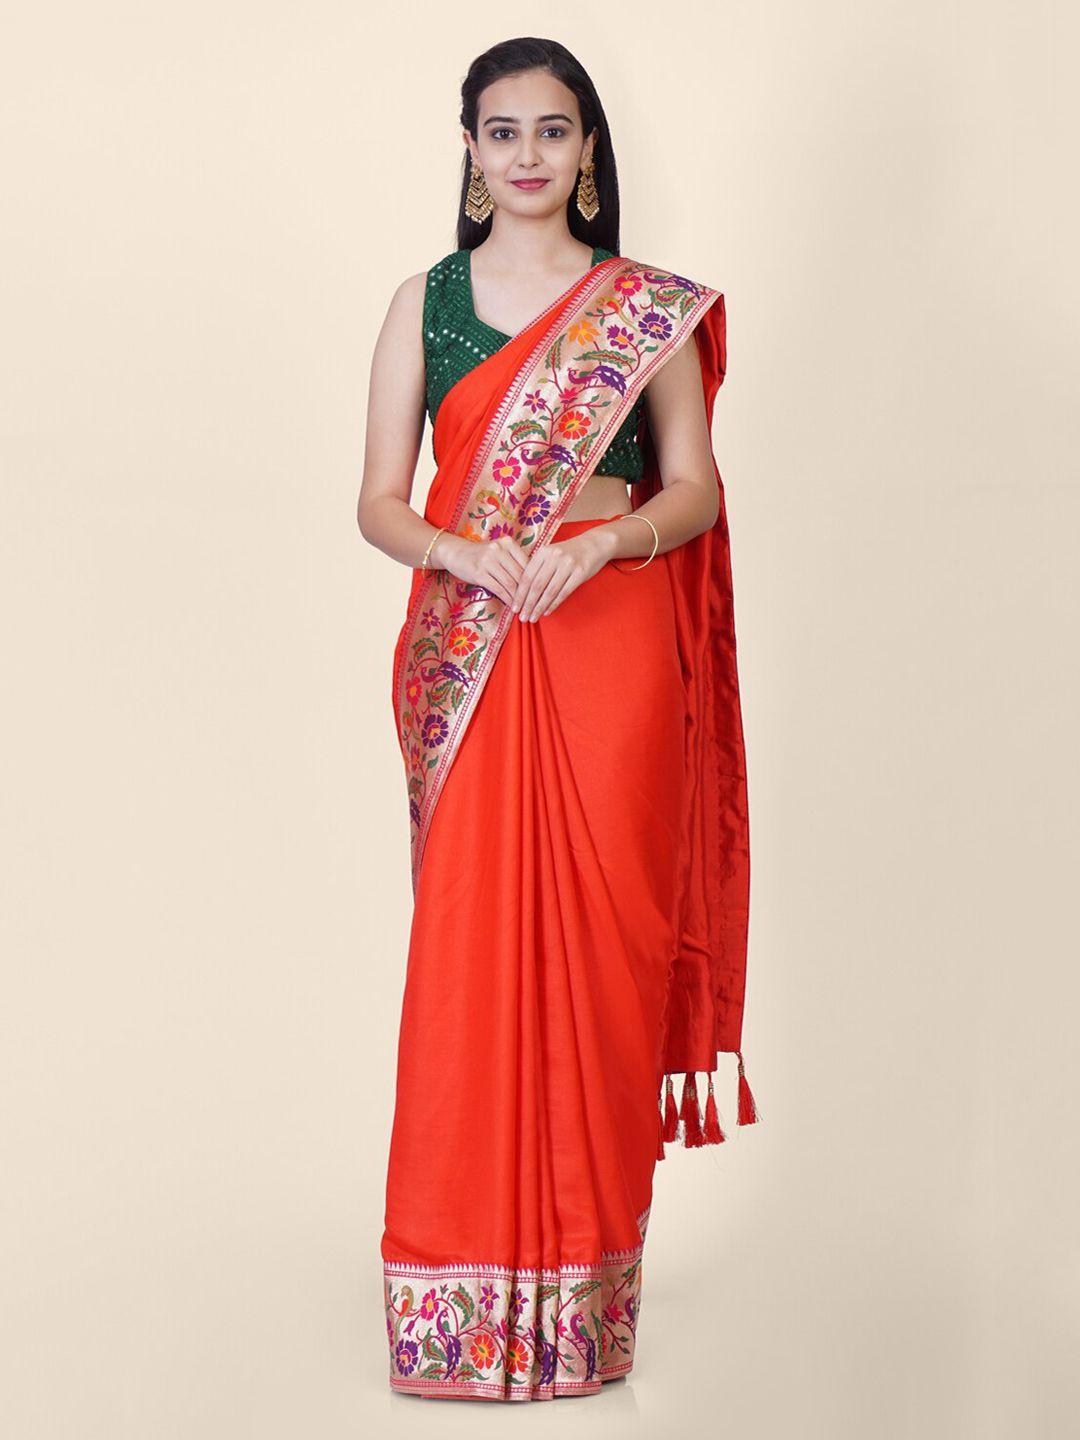 hastakala red satin solid paithani handloom saree with tasseled pallu